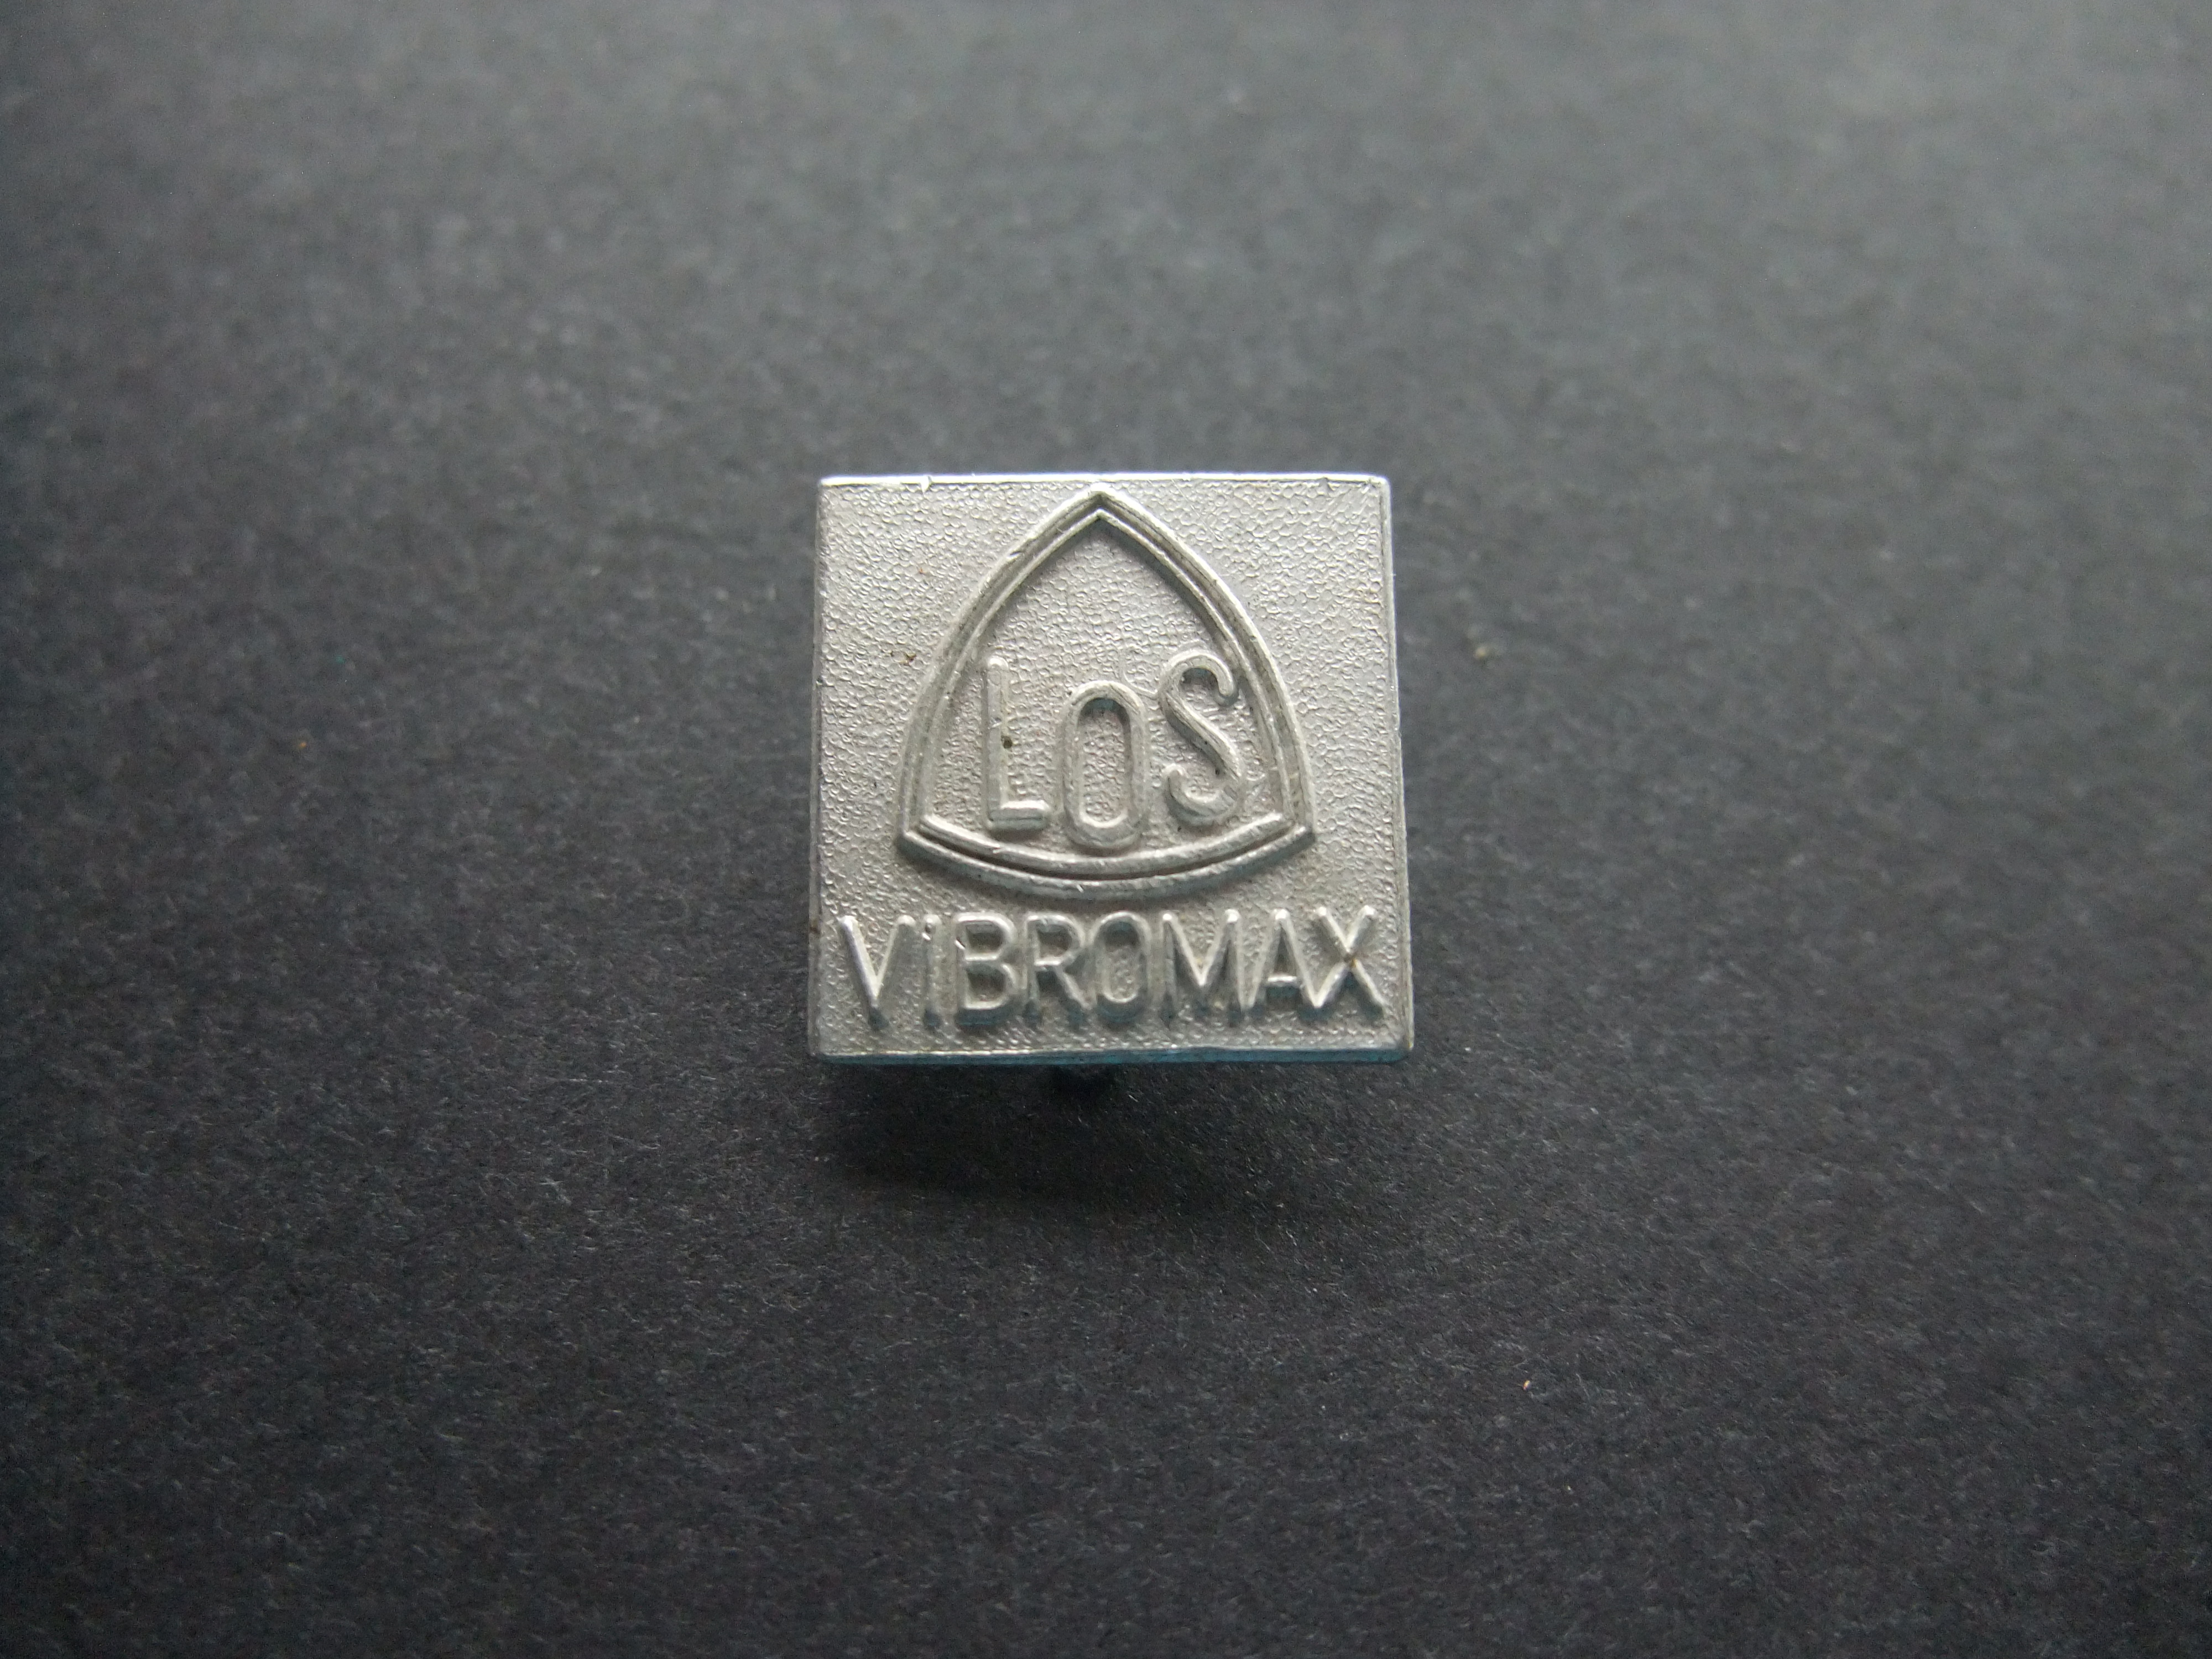 Los Vibromax Duitse fabrikant van condensors , smeerapparaten , kleppen, Pompen en meetinstrumenten